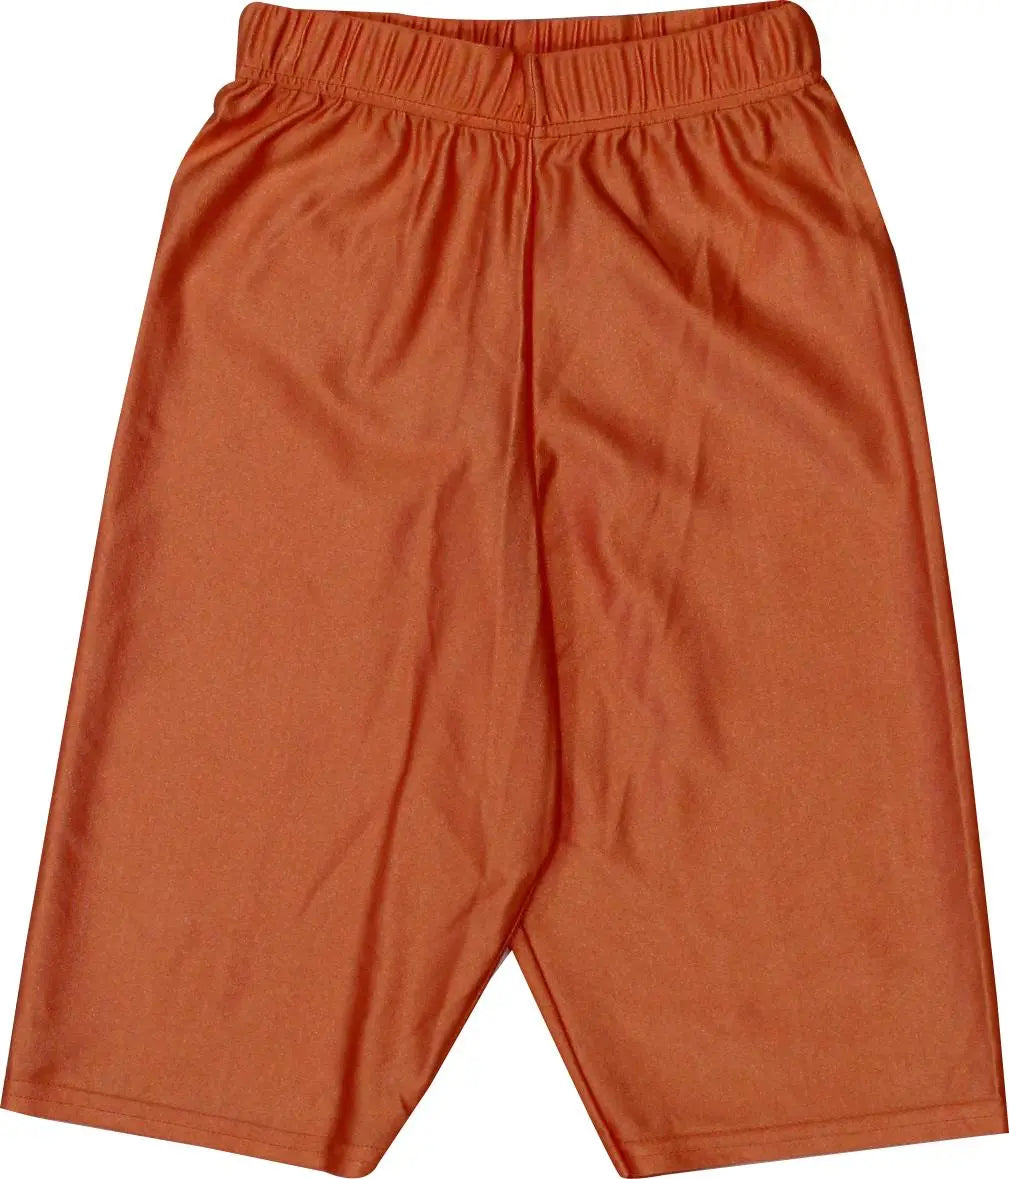 Confezioni - Orange Biker Short- ThriftTale.com - Vintage and second handclothing